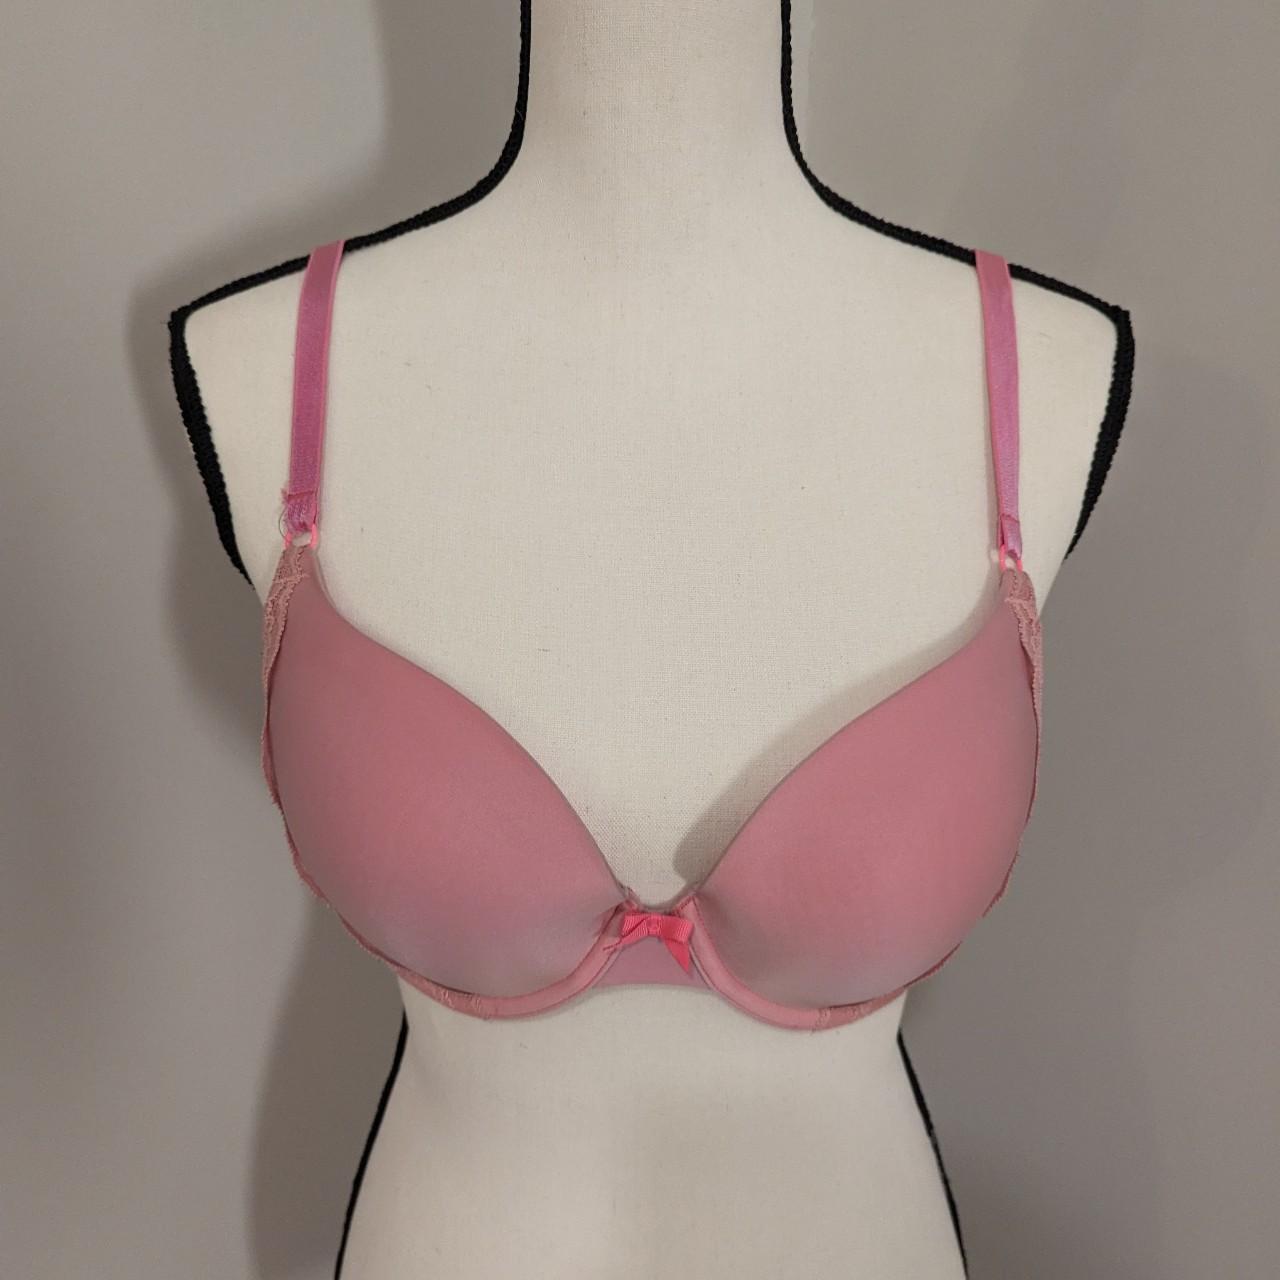 Victoria's secret demi bra pink 34D. Fair condition - Depop